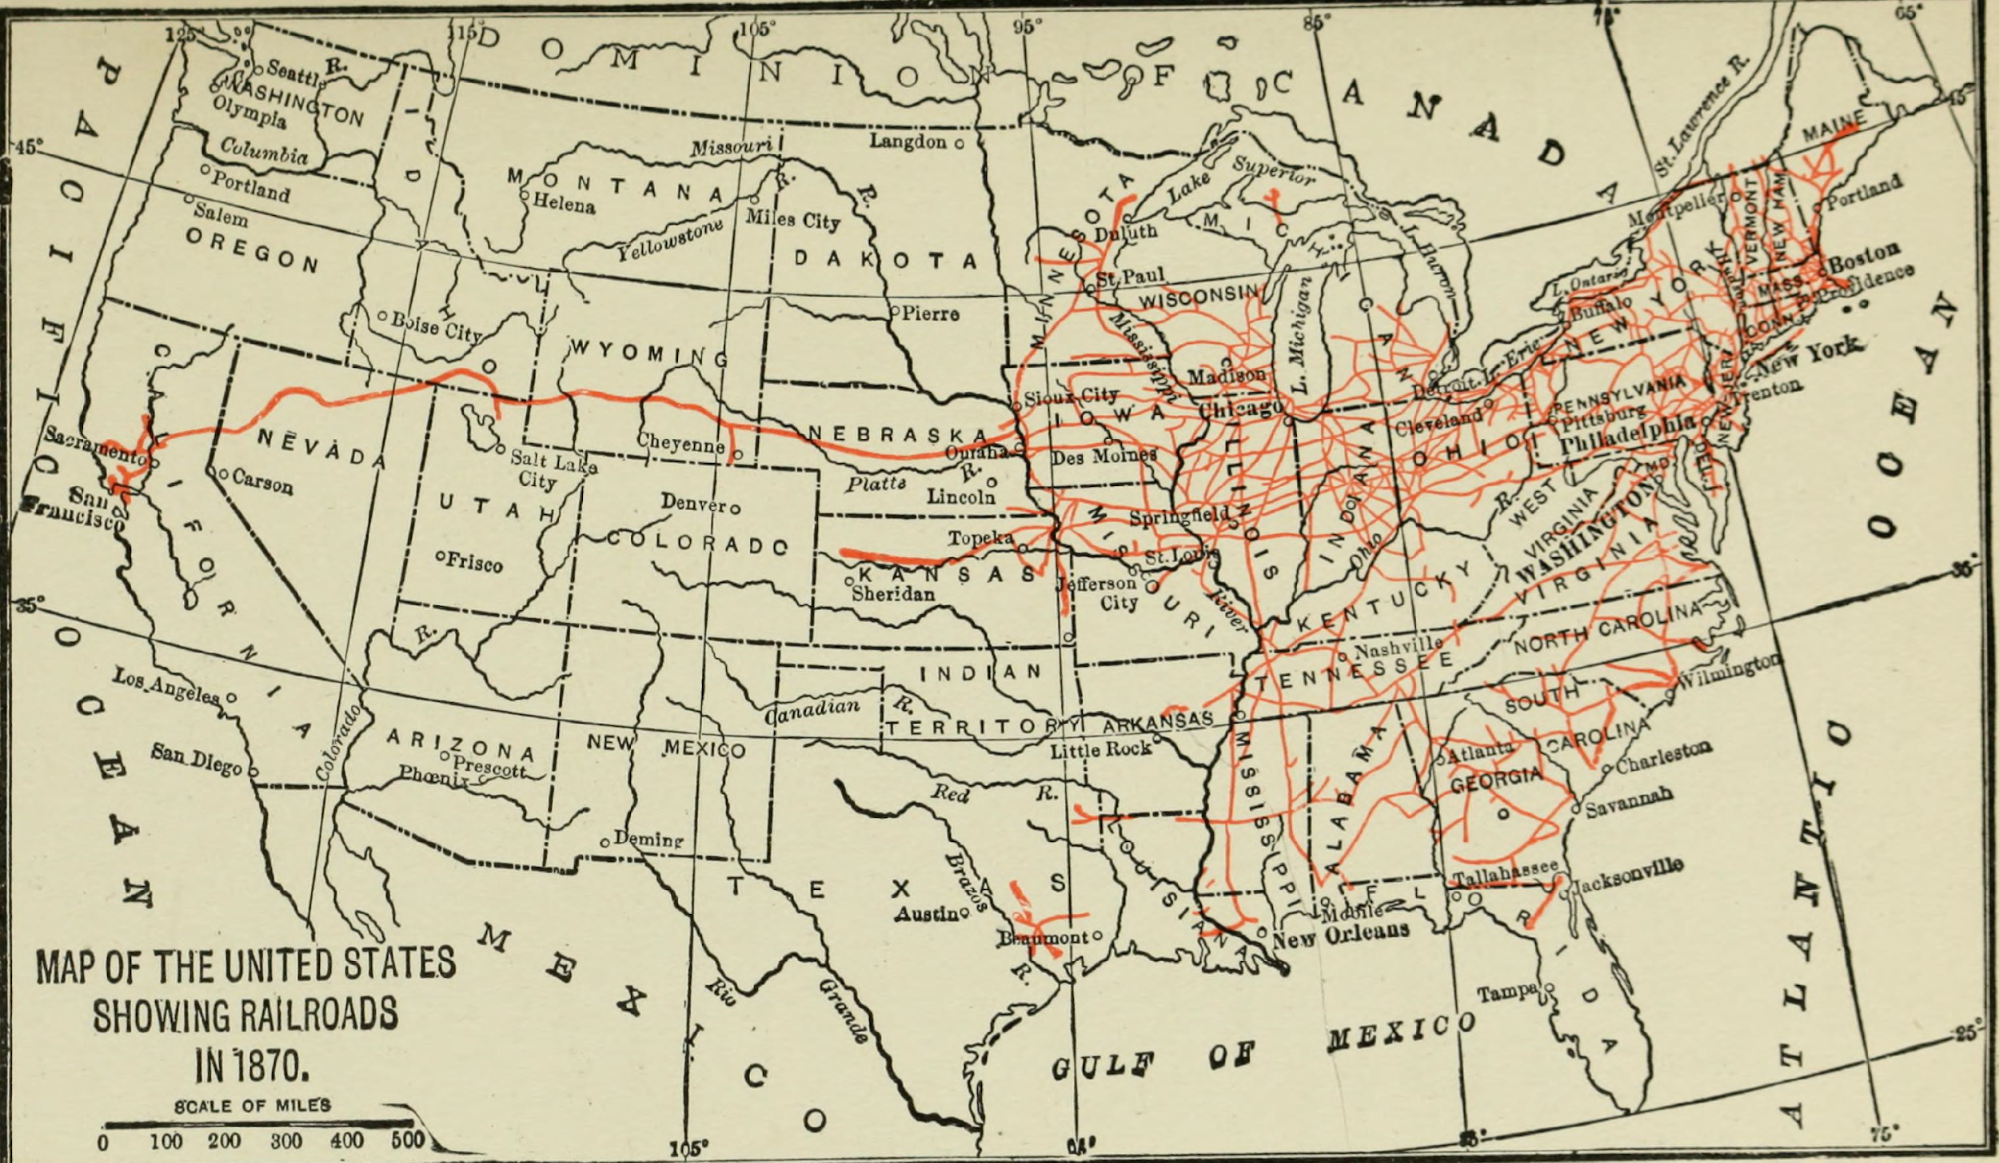 Railroads in 1870